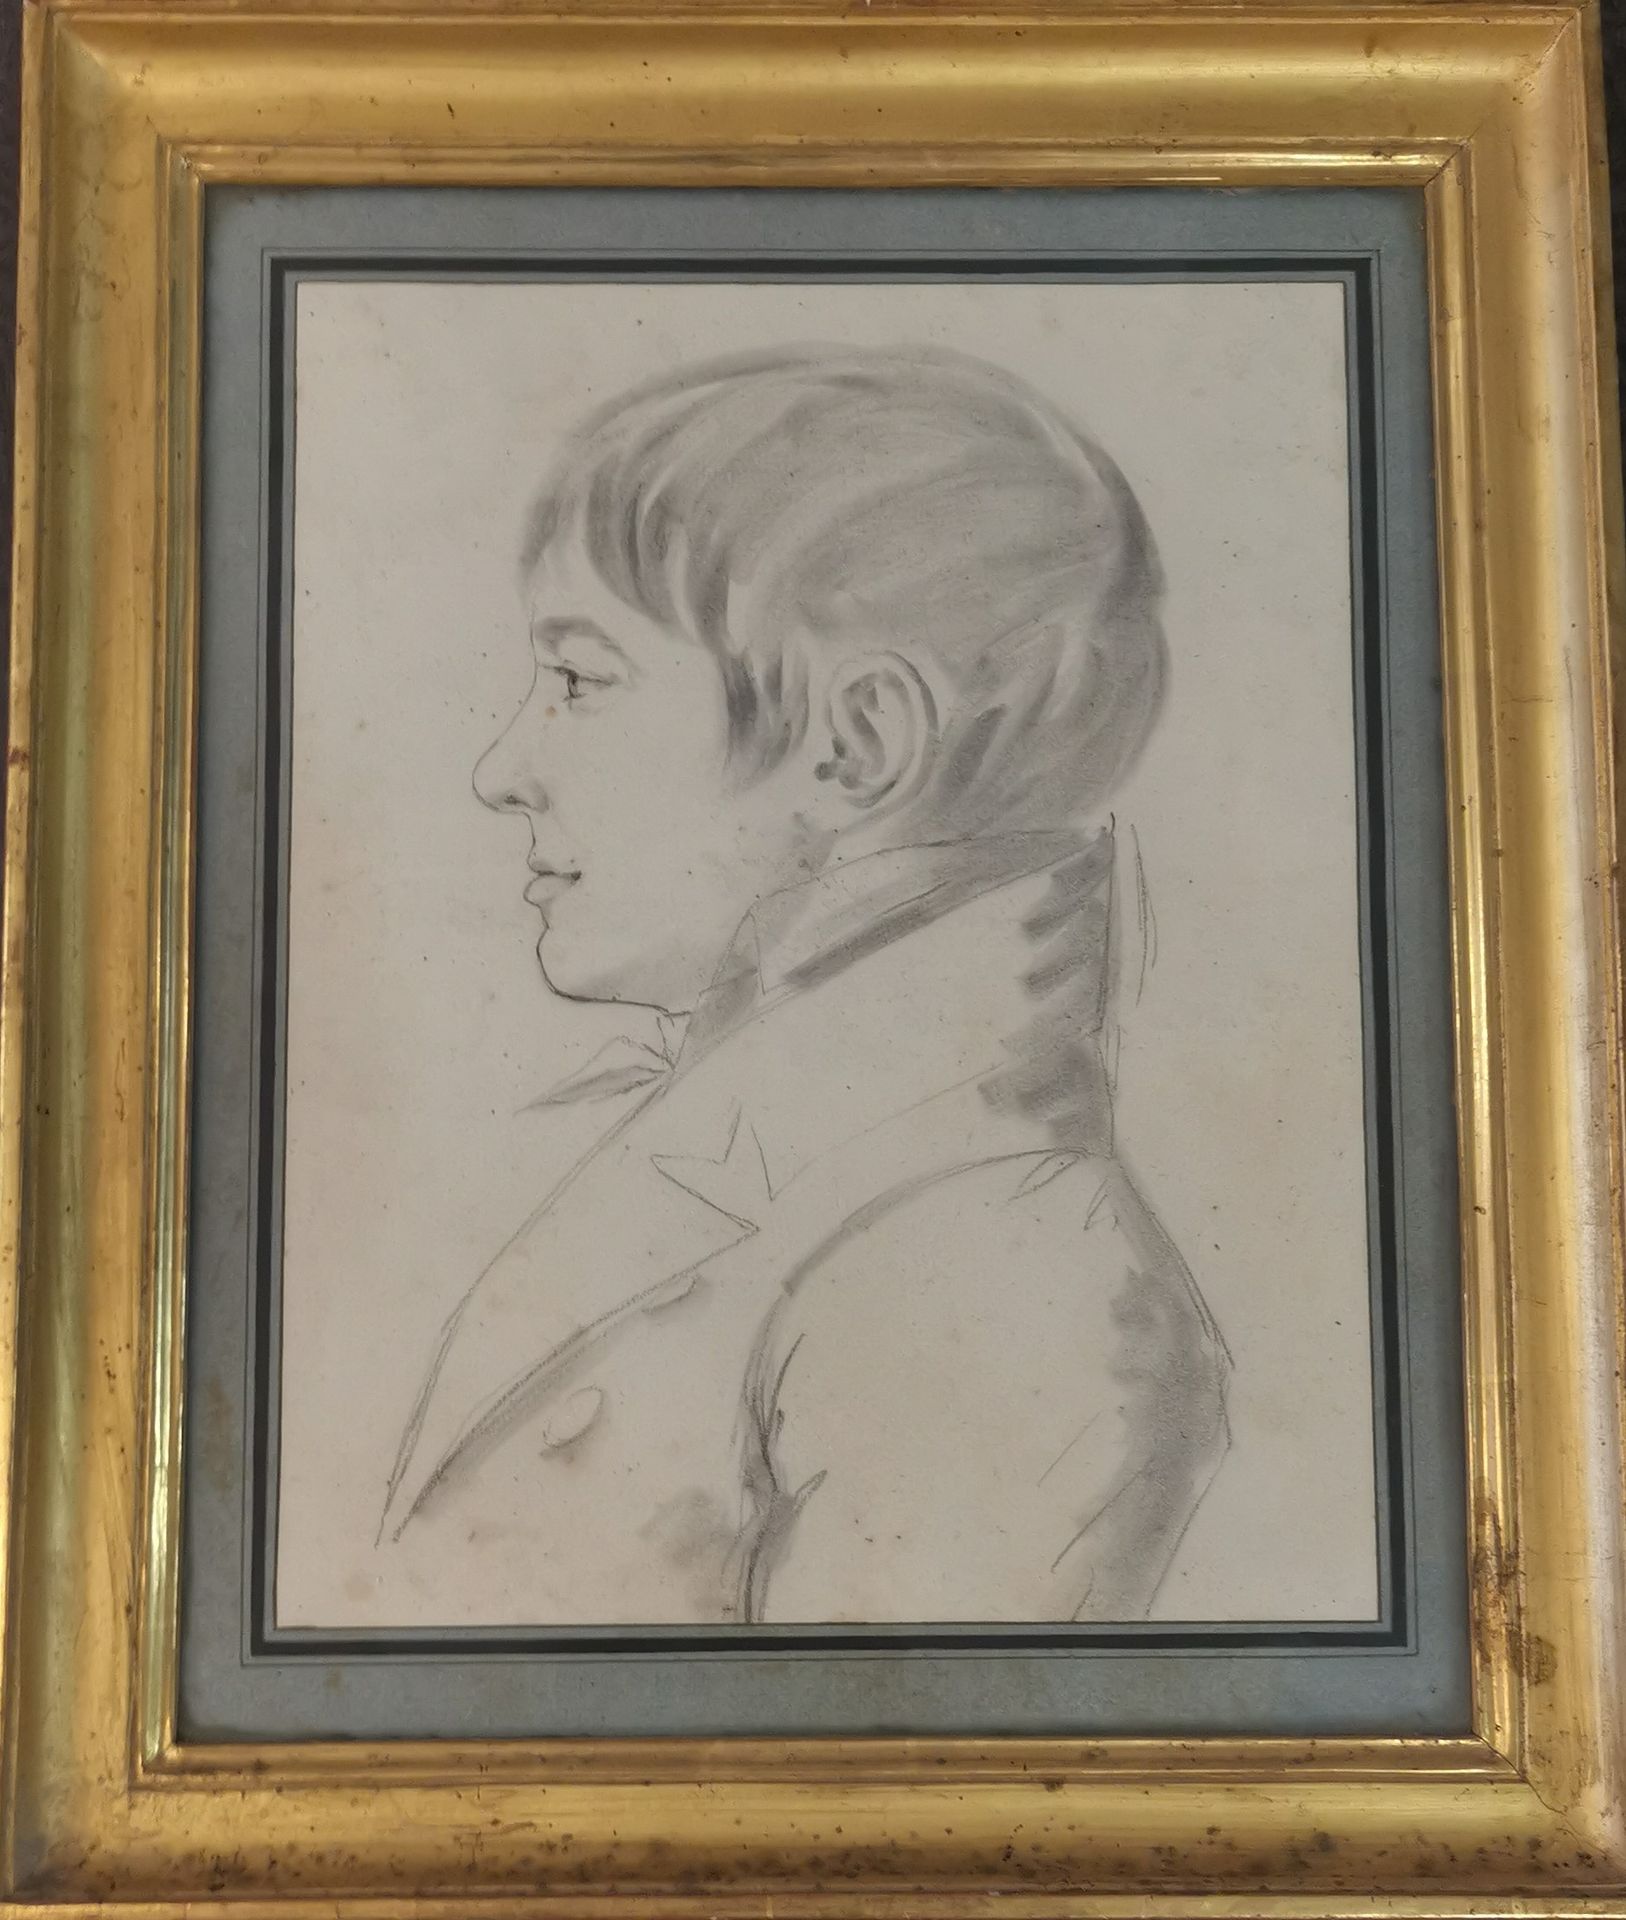 Null 十九世纪初的法国学校。铅笔画，一个戴着眼镜的年轻男子的侧面肖像。34 x 26,5 cm。